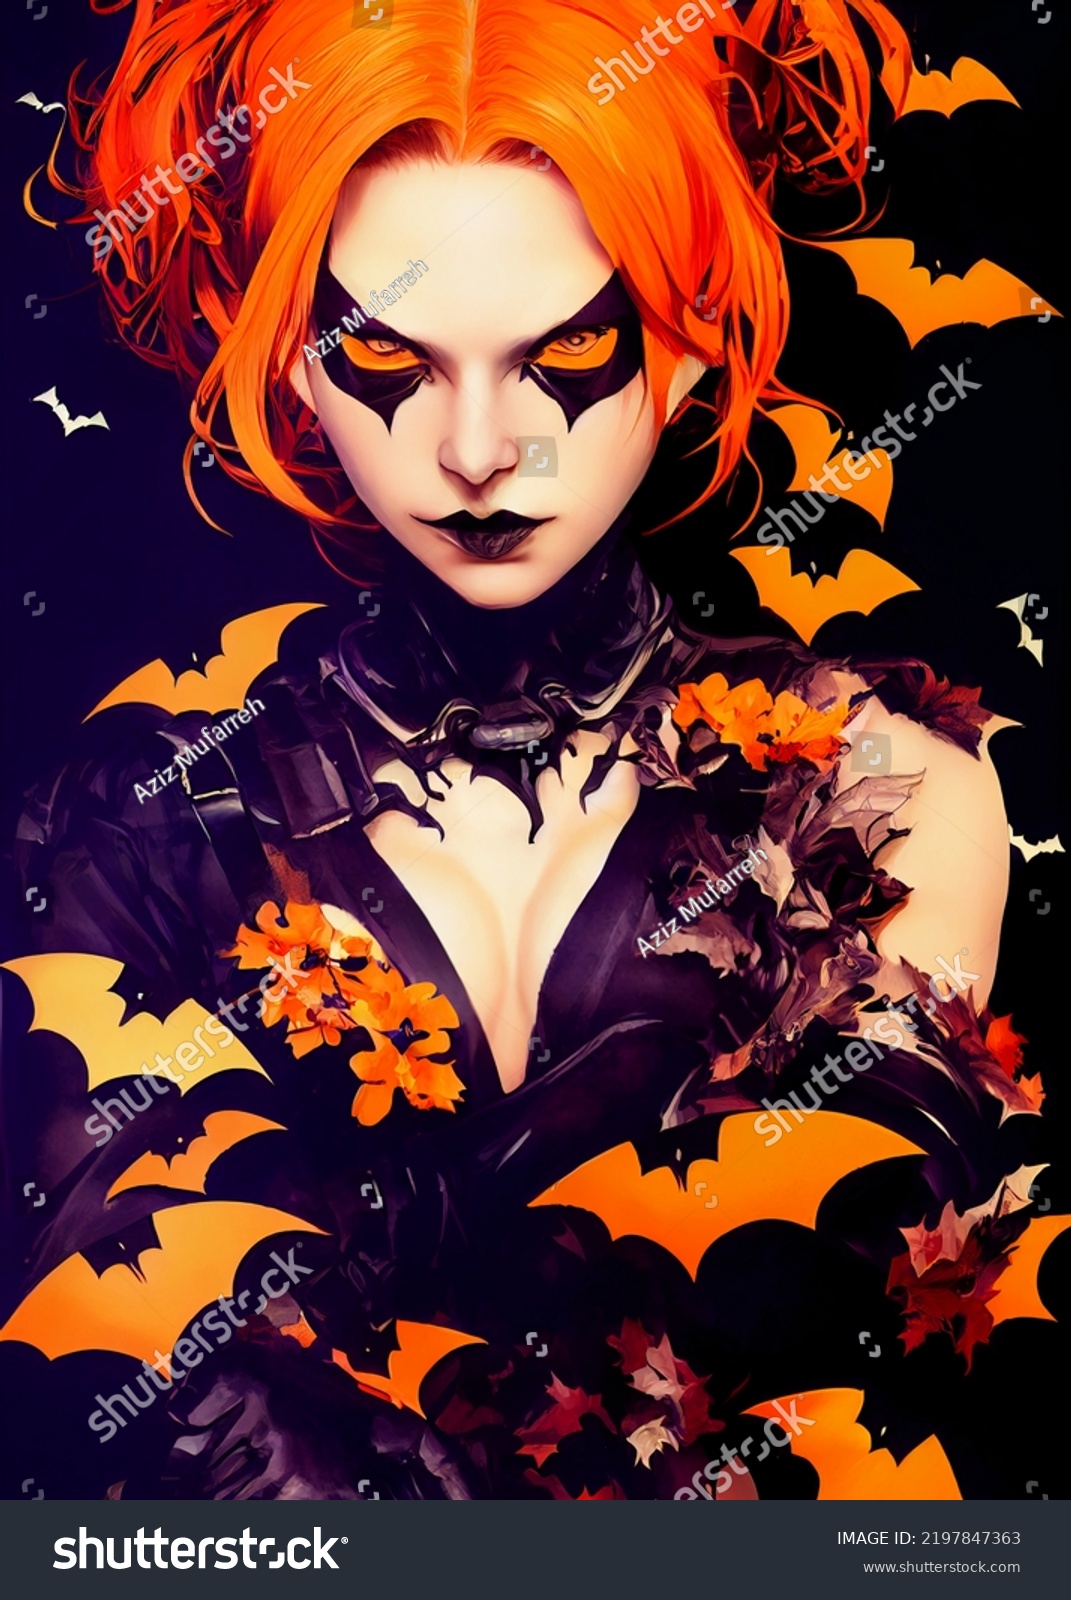 Orange Black Evil Halloween Bat Girl Stock Illustration 2197847363 Shutterstock